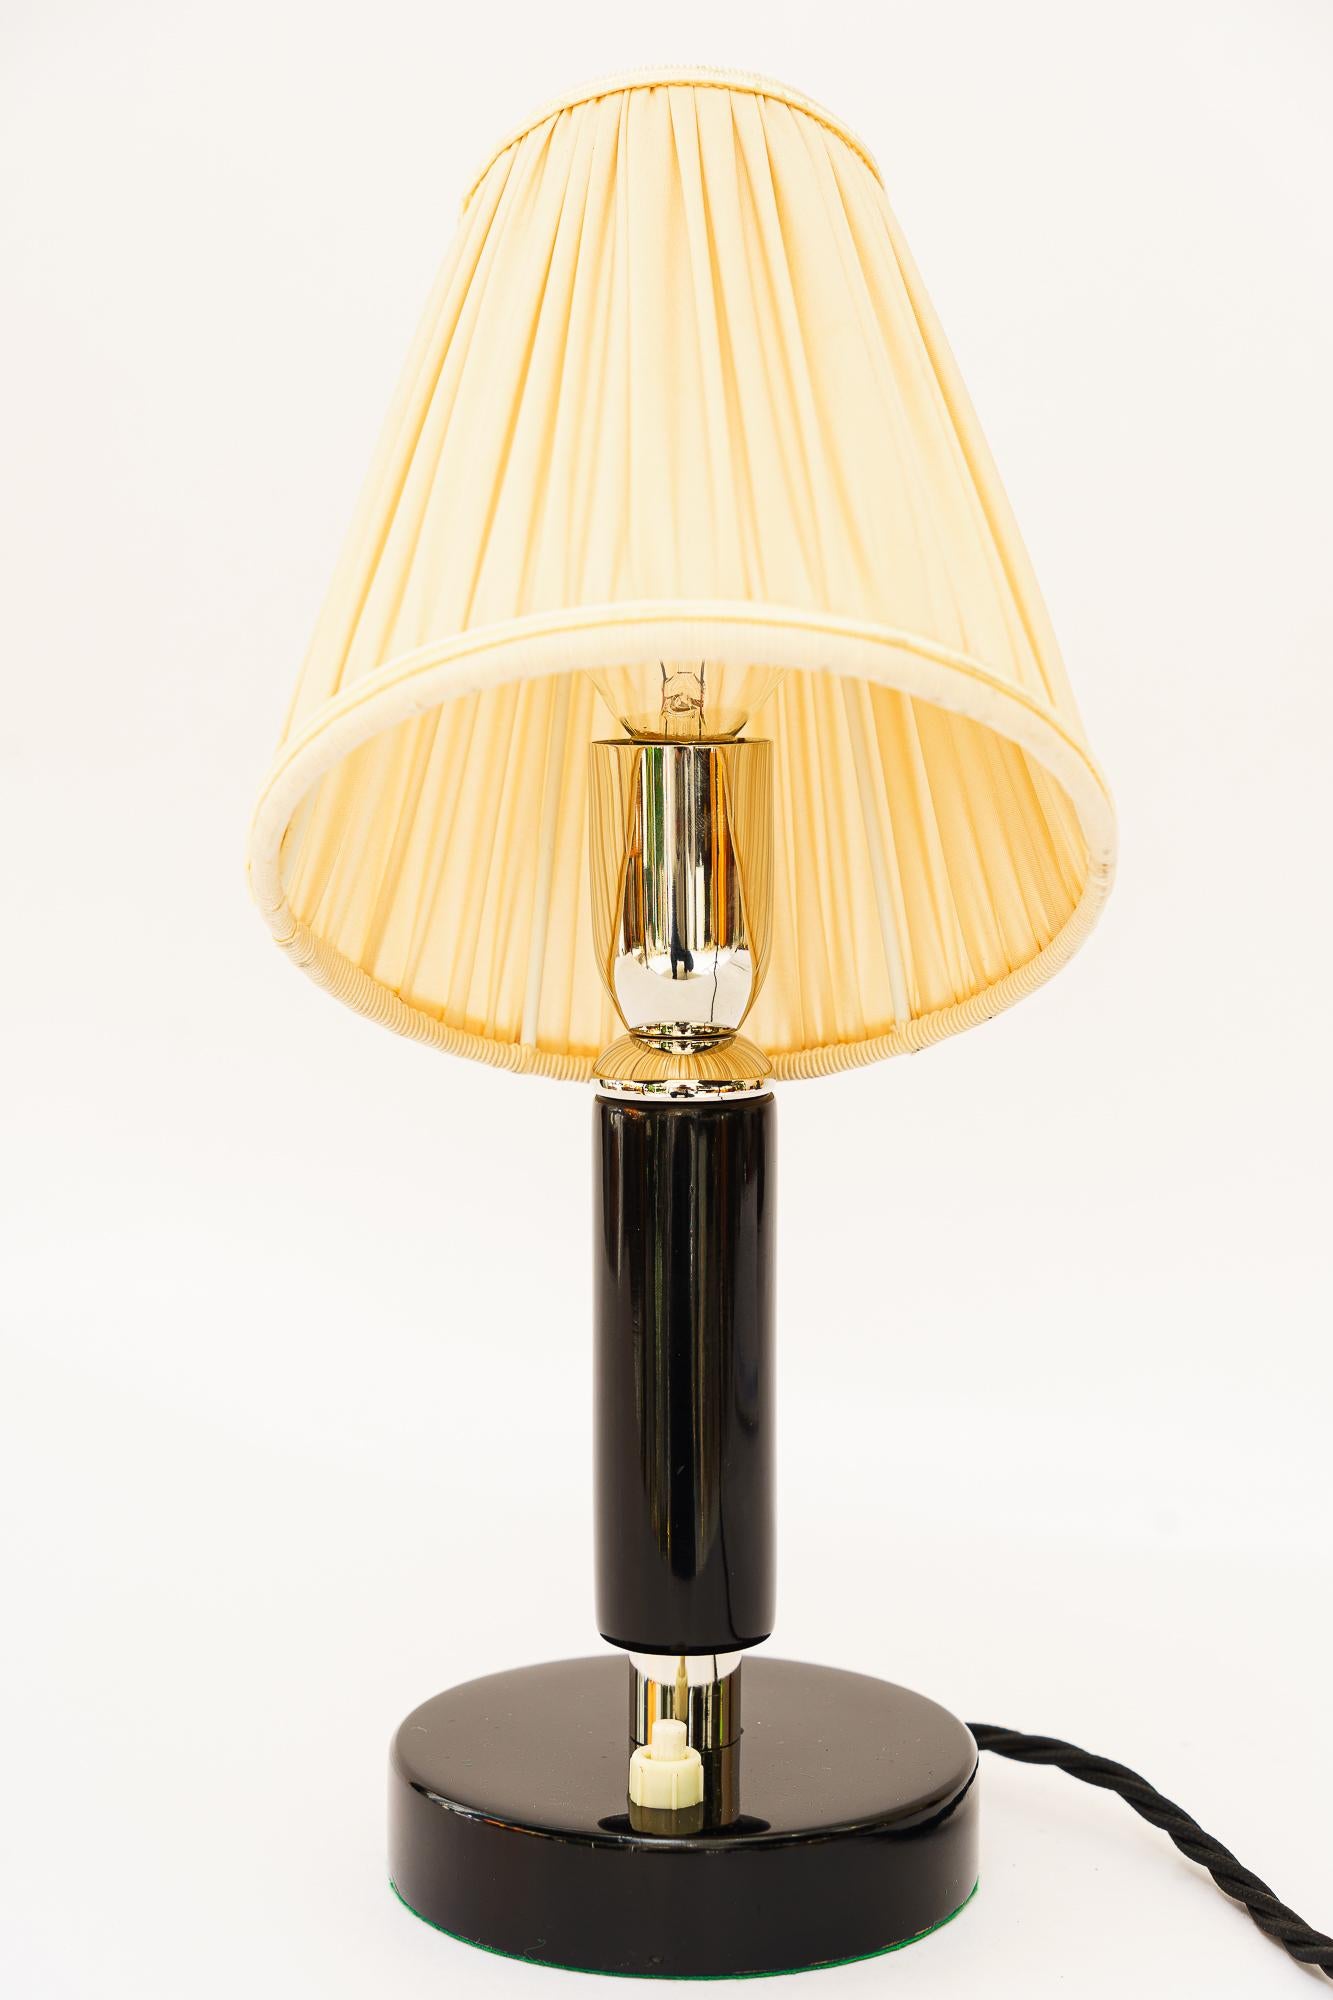 Lampe de table Art Déco en bois nickelé avec abat-jour en tissu vers les années 1920
Laiton (nickelé)
L'abat-jour en tissu est remplacé (neuf).